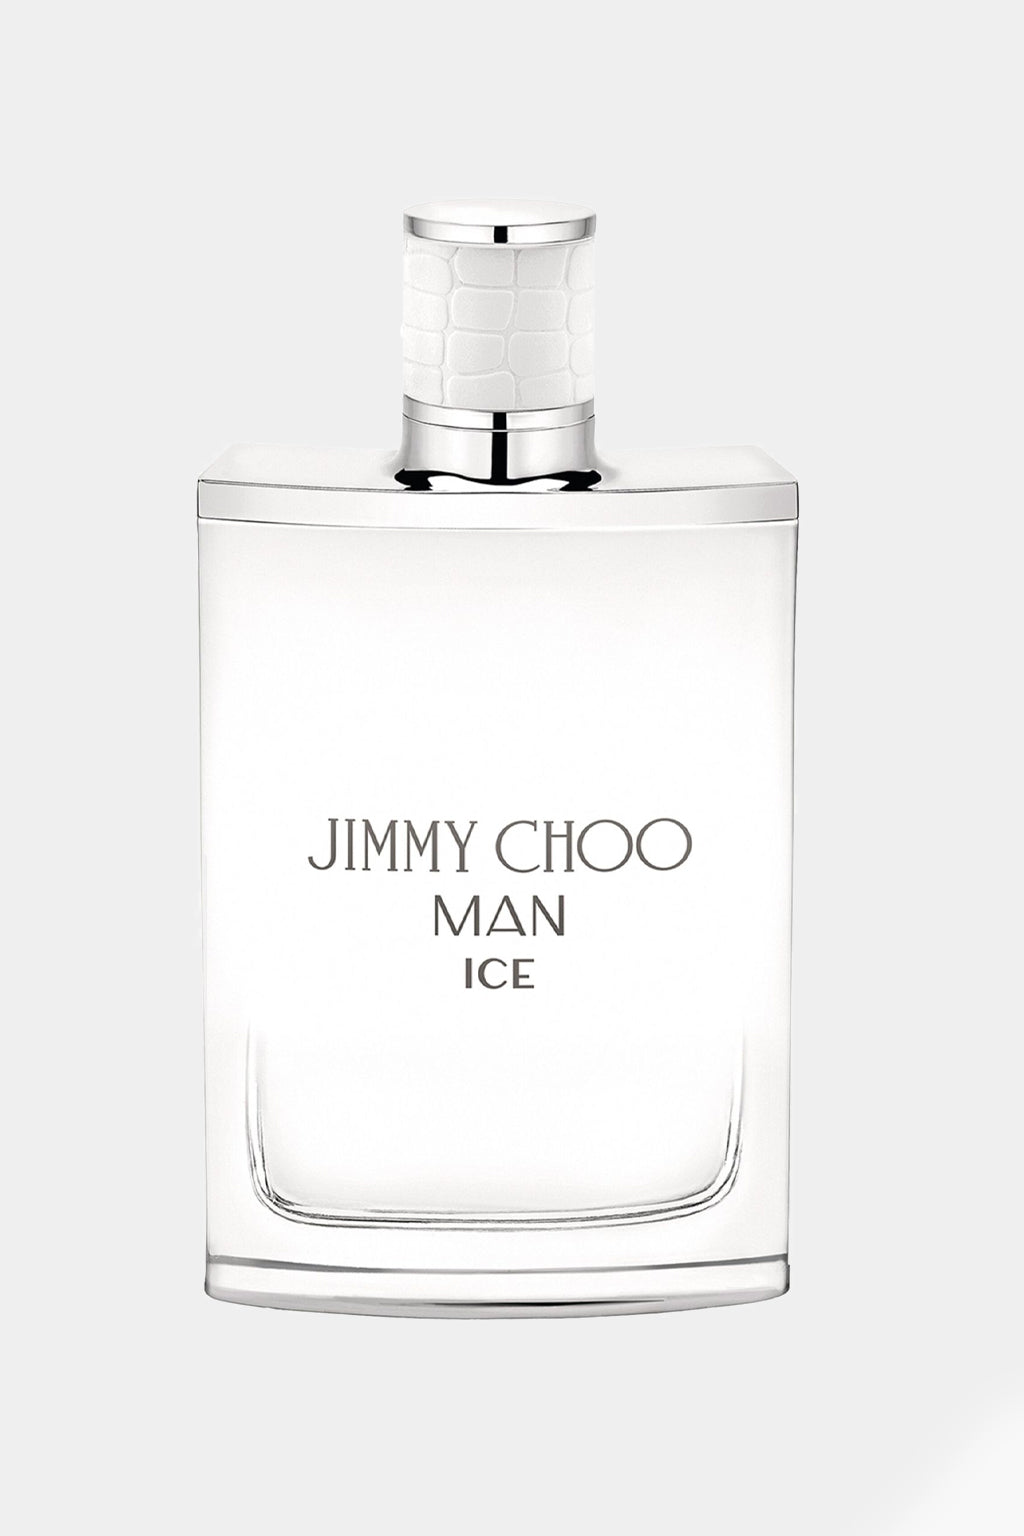 Jimmy Choo - Man Ice Eau De Toilette 100ml